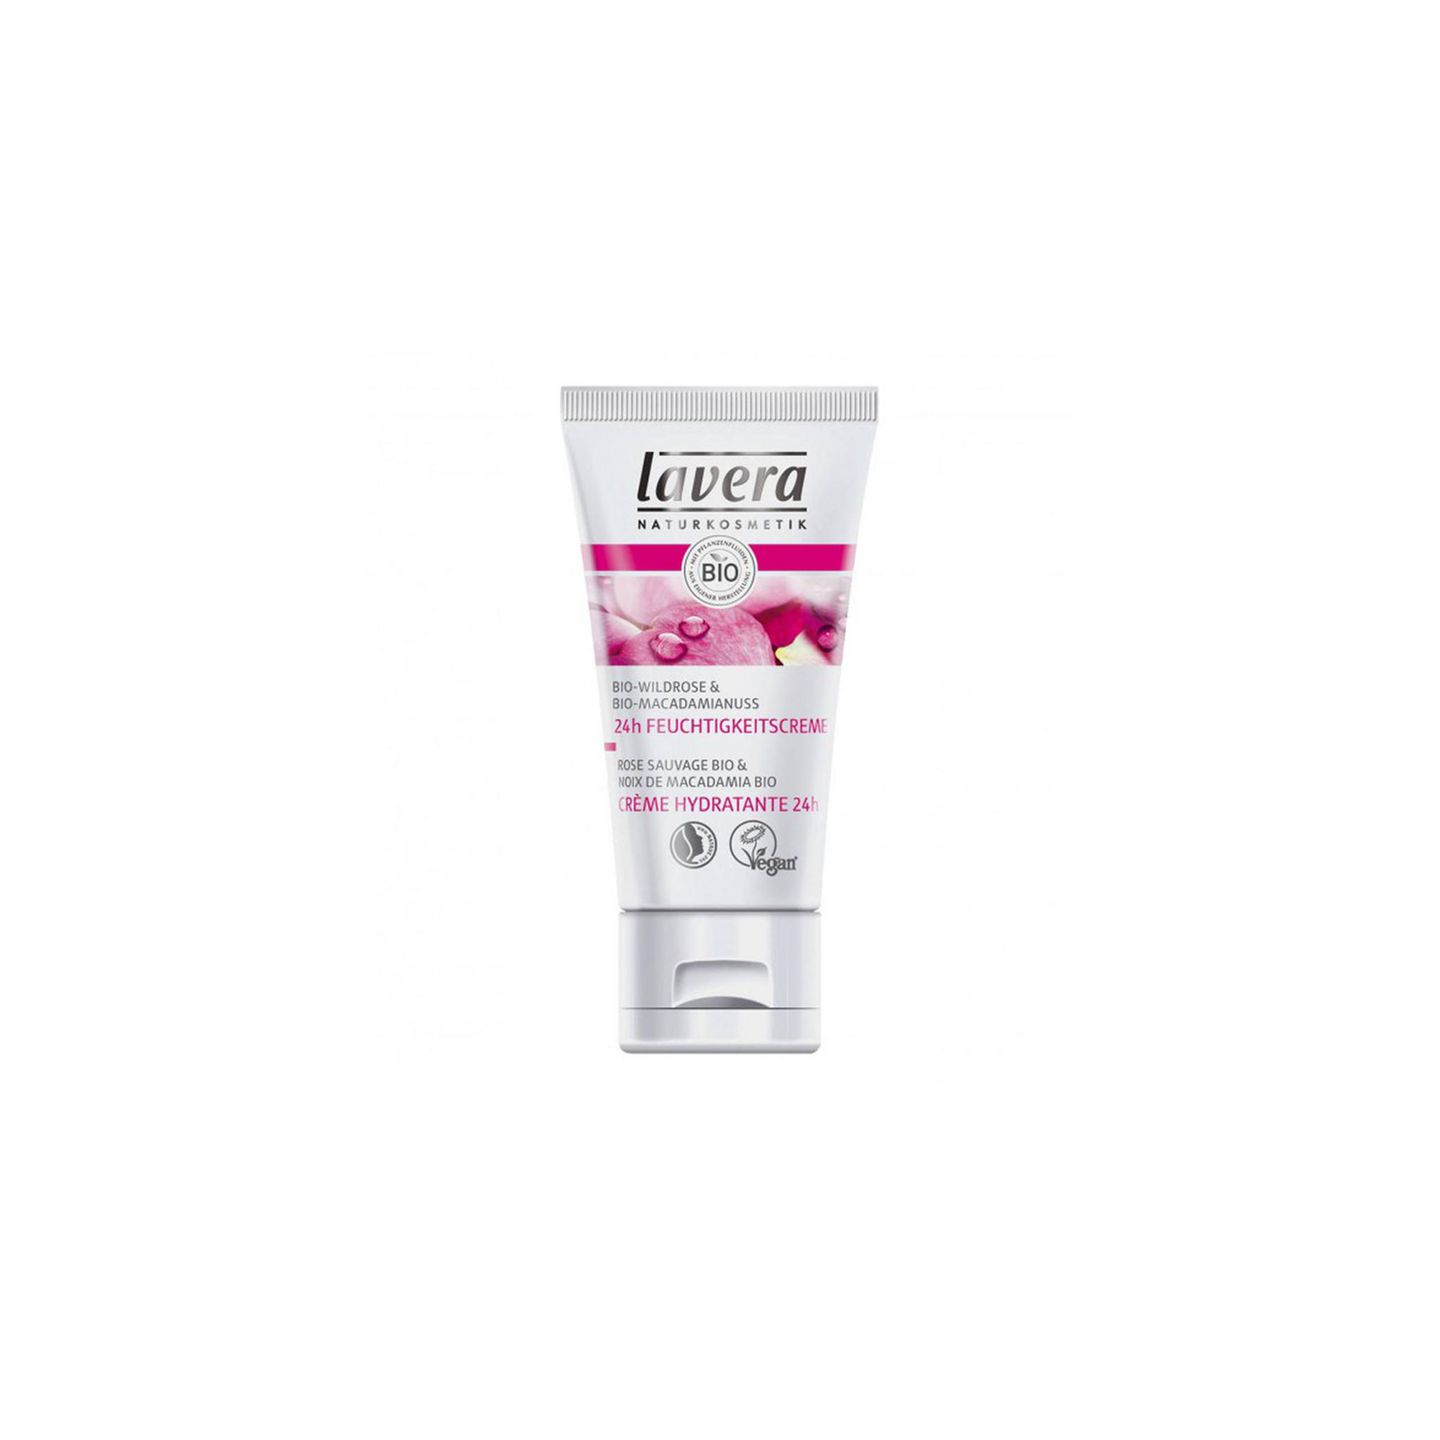 Gesichtscreme für trockene Haut: lavera 24h Feuchtigkeitscreme mit Wildrose